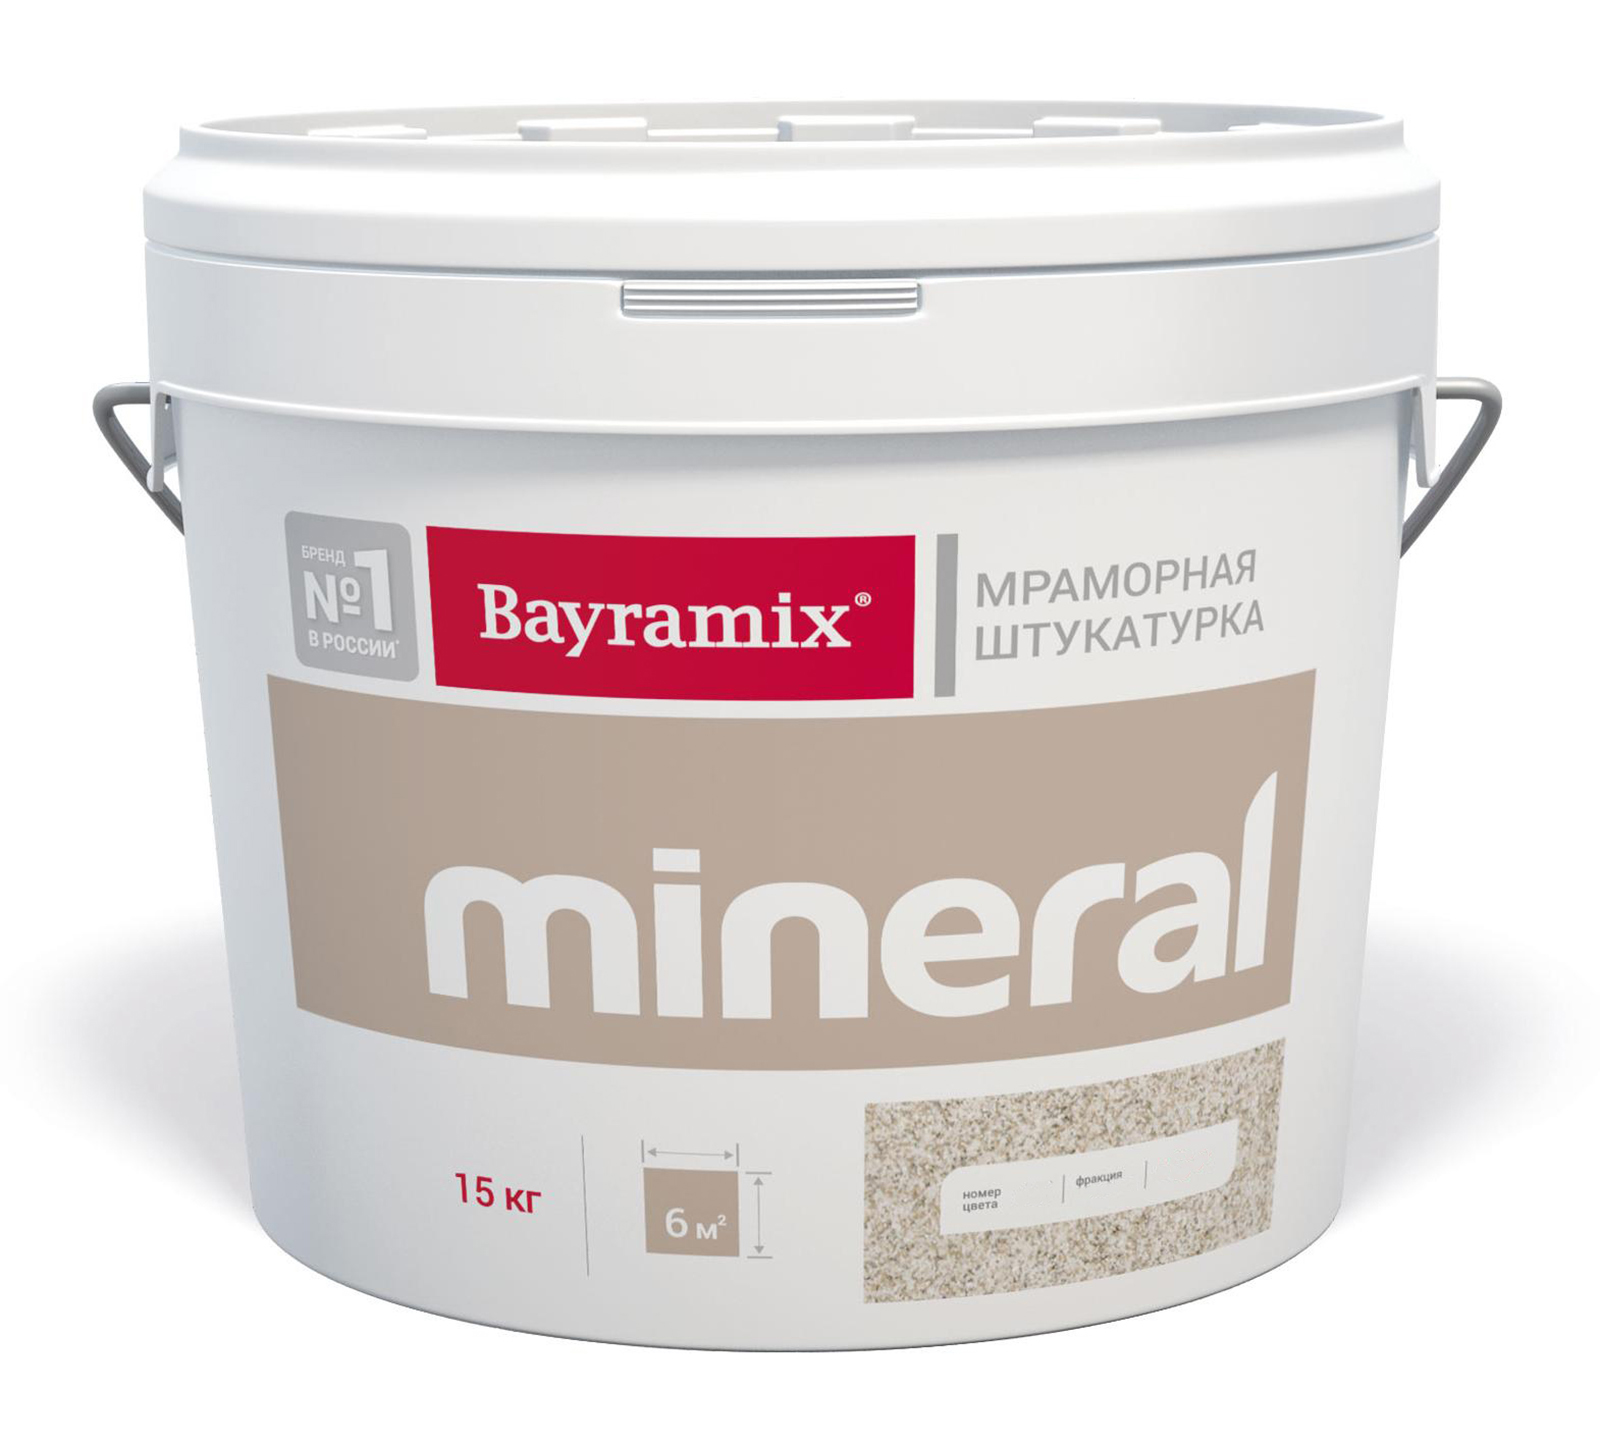 фото Штукатурка мраморная bayramix mineral 354. 15 кг